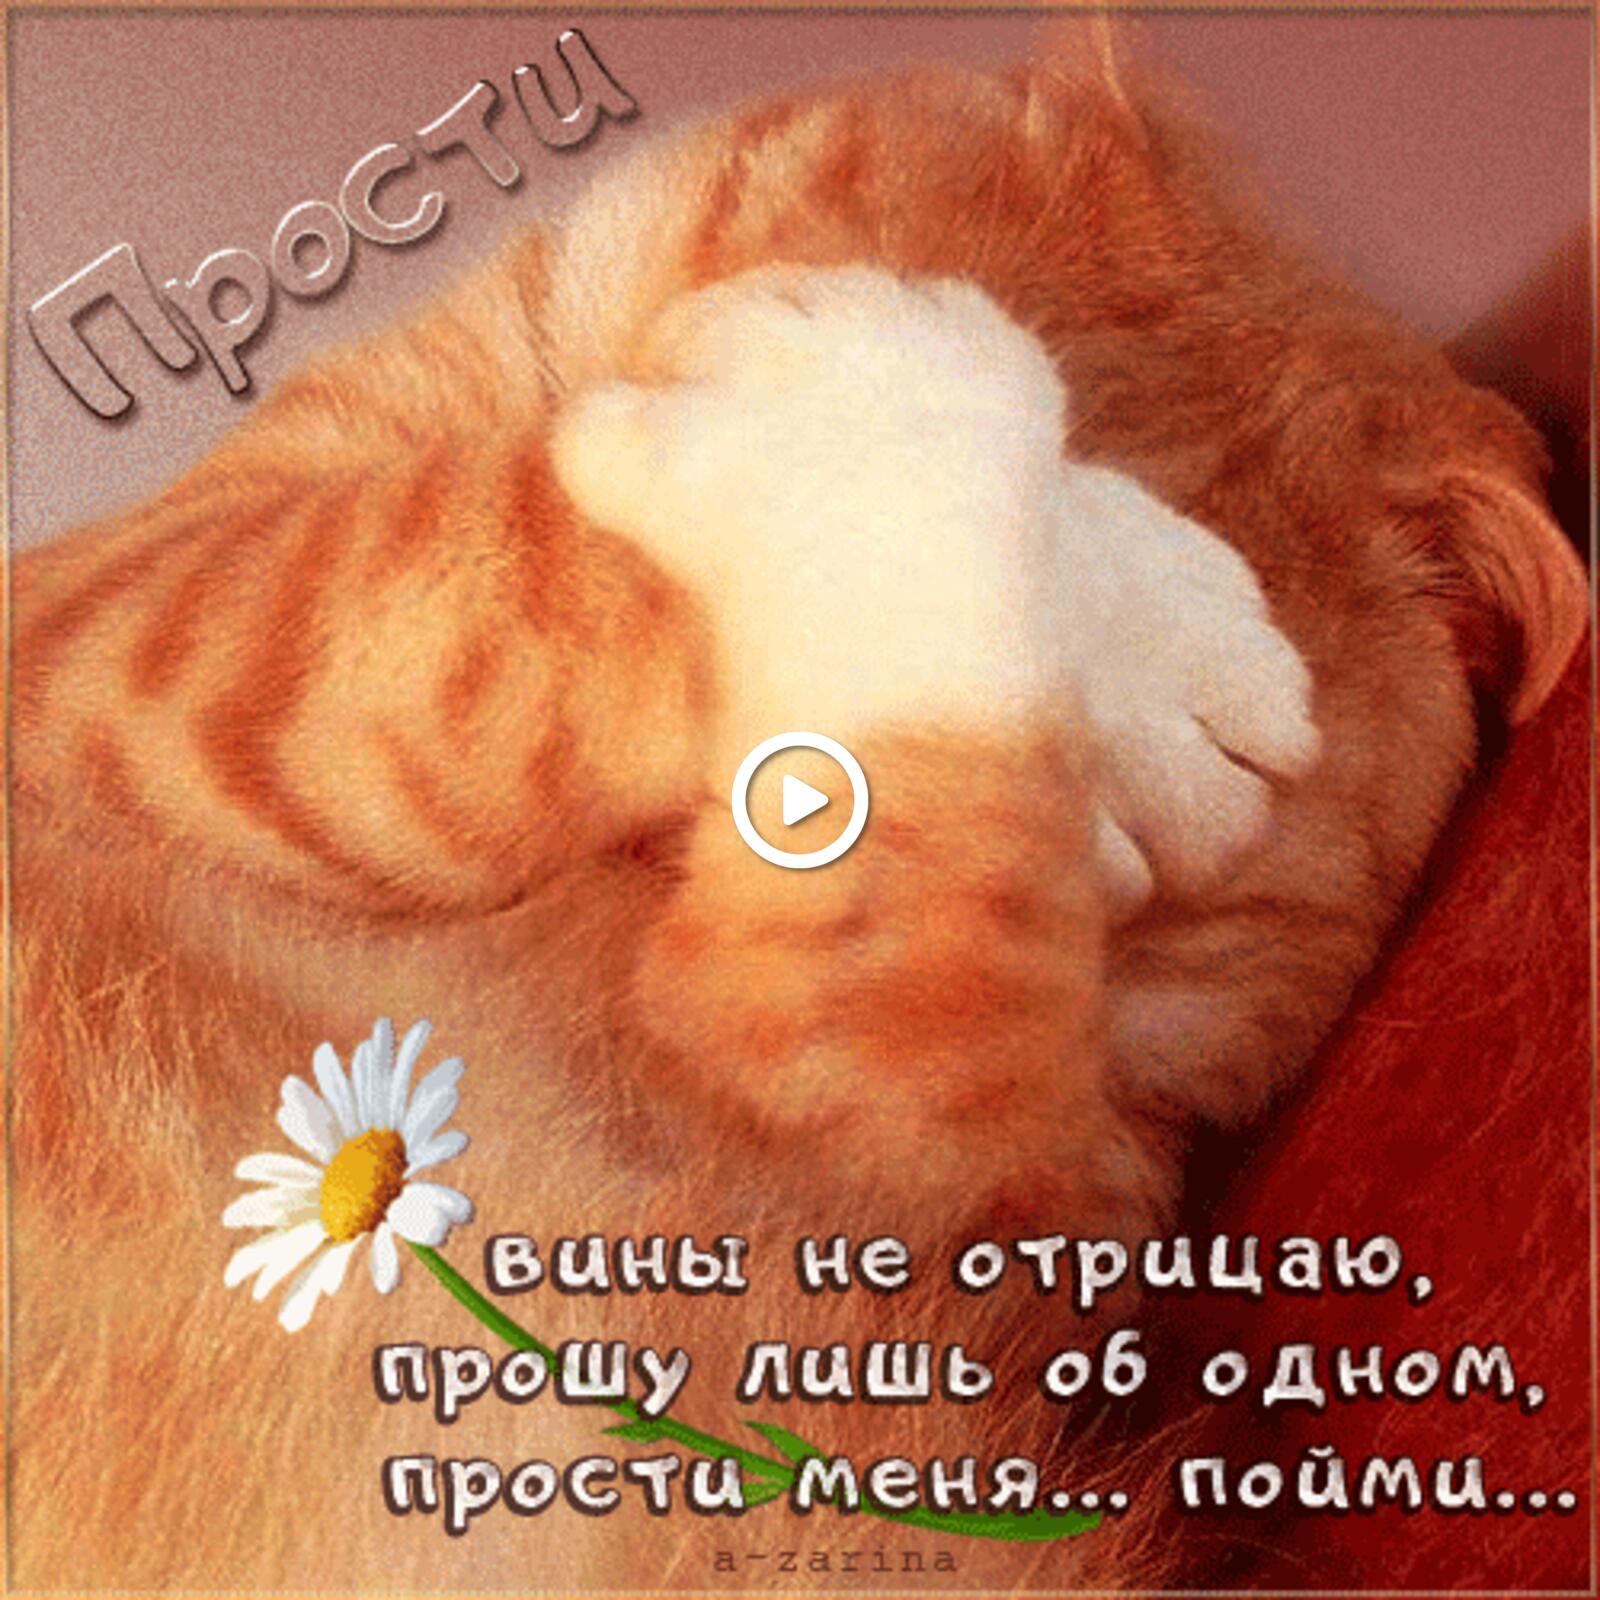 一张以猫 菊花 动画为主题的明信片